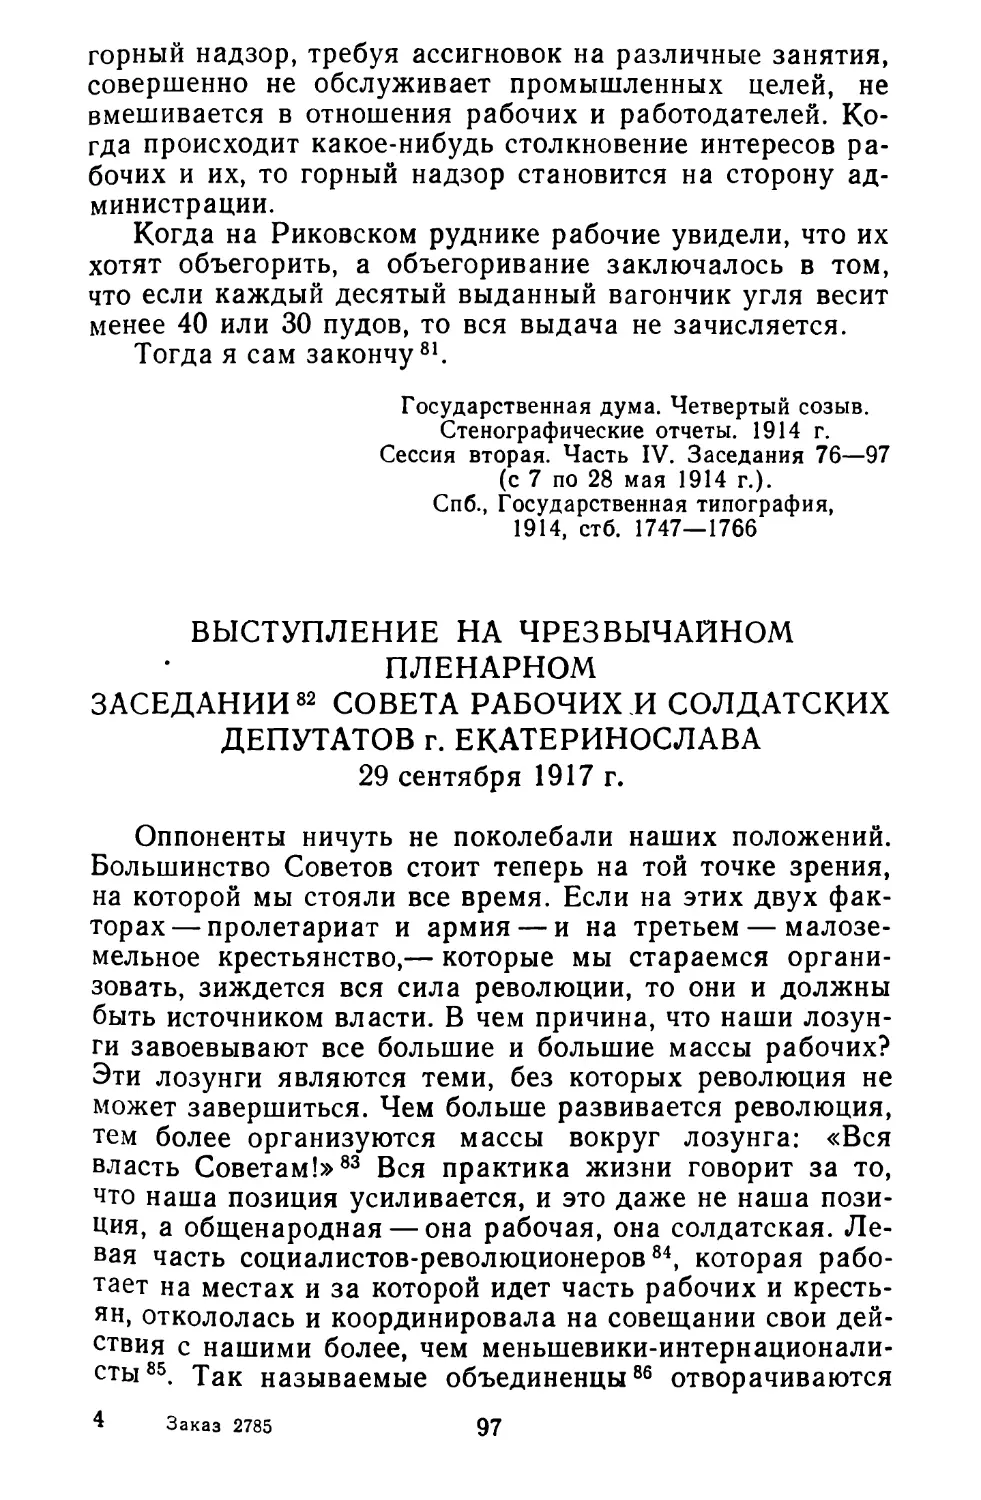 Выступление на чрезвычайном пленарном заседании Совета рабочих и солдатских депутатов г. Екатеринослава. 29 сентября 1917 г.